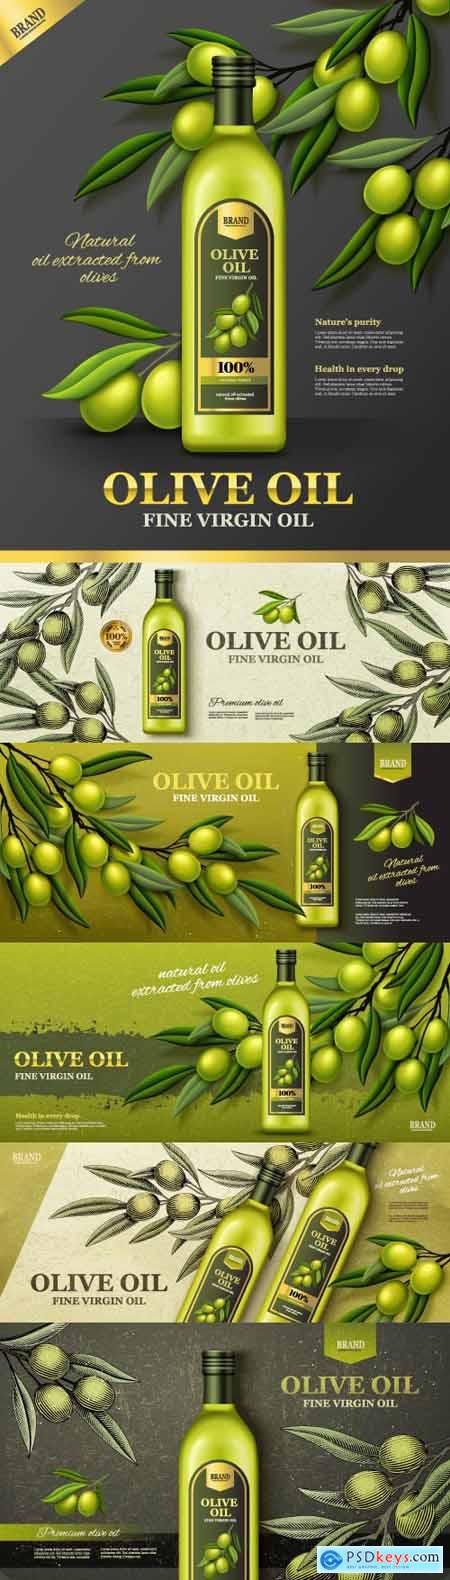 Olive oil banner vector ads